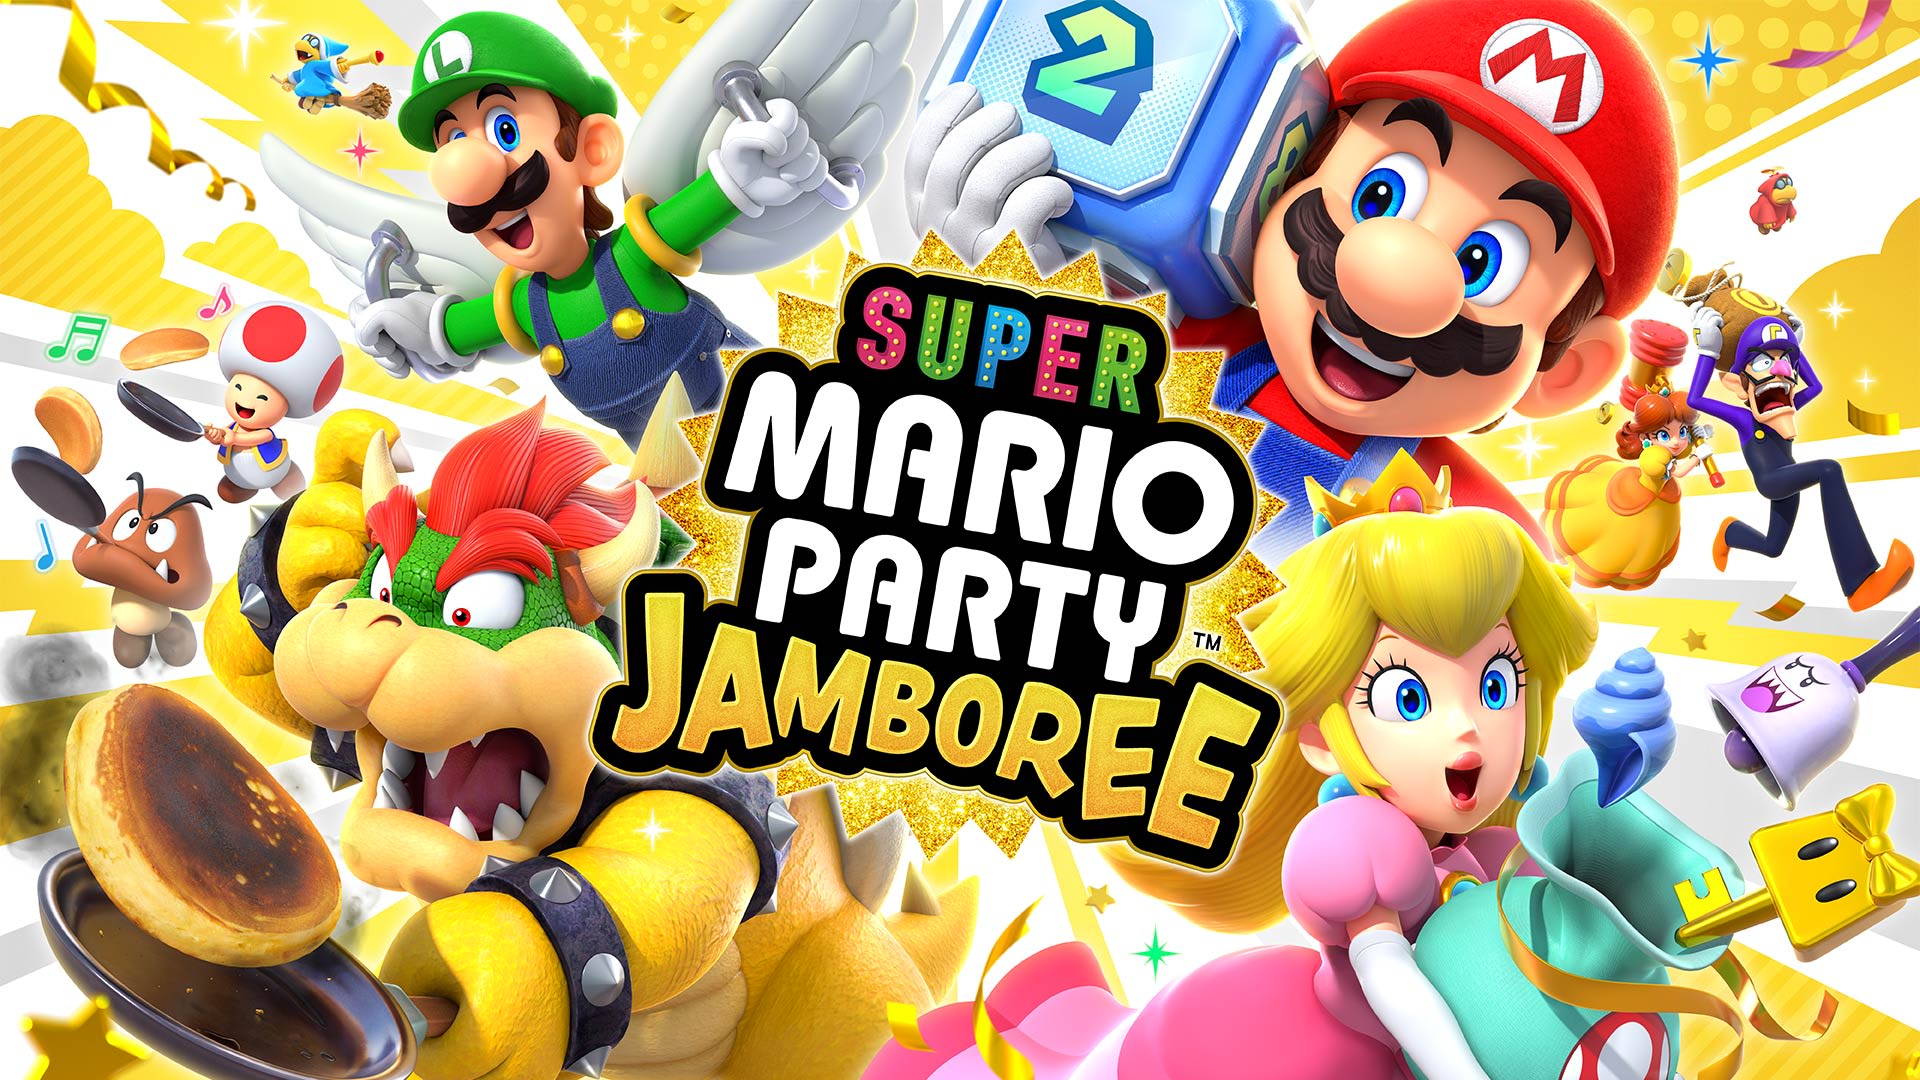 Super Mario Party™ Jamboree